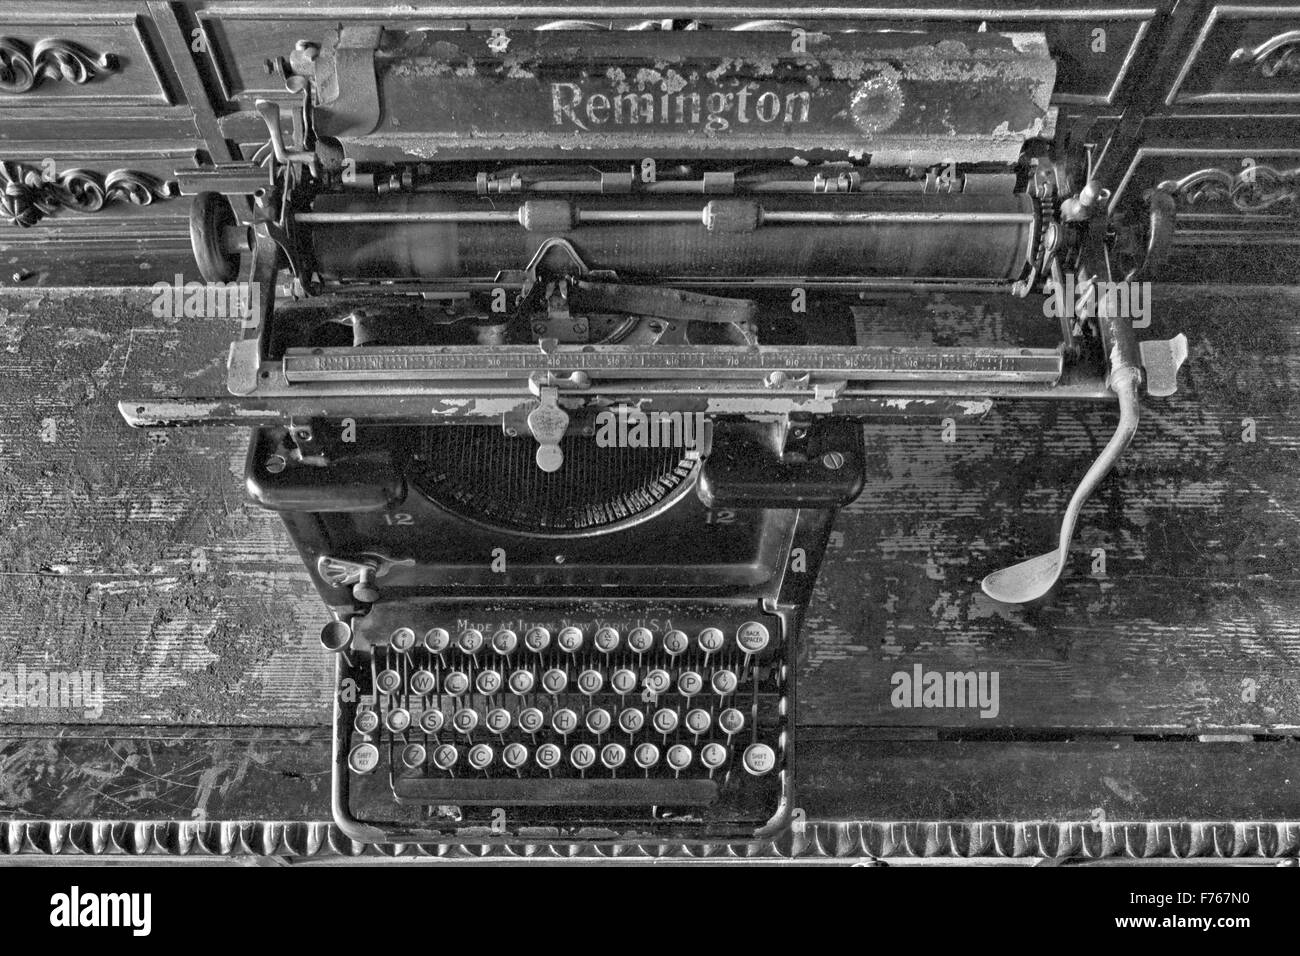 Remington typewriter, old Remington typewriter, vintage Remington typewriter, antique Remington typewriter, Stock Photo